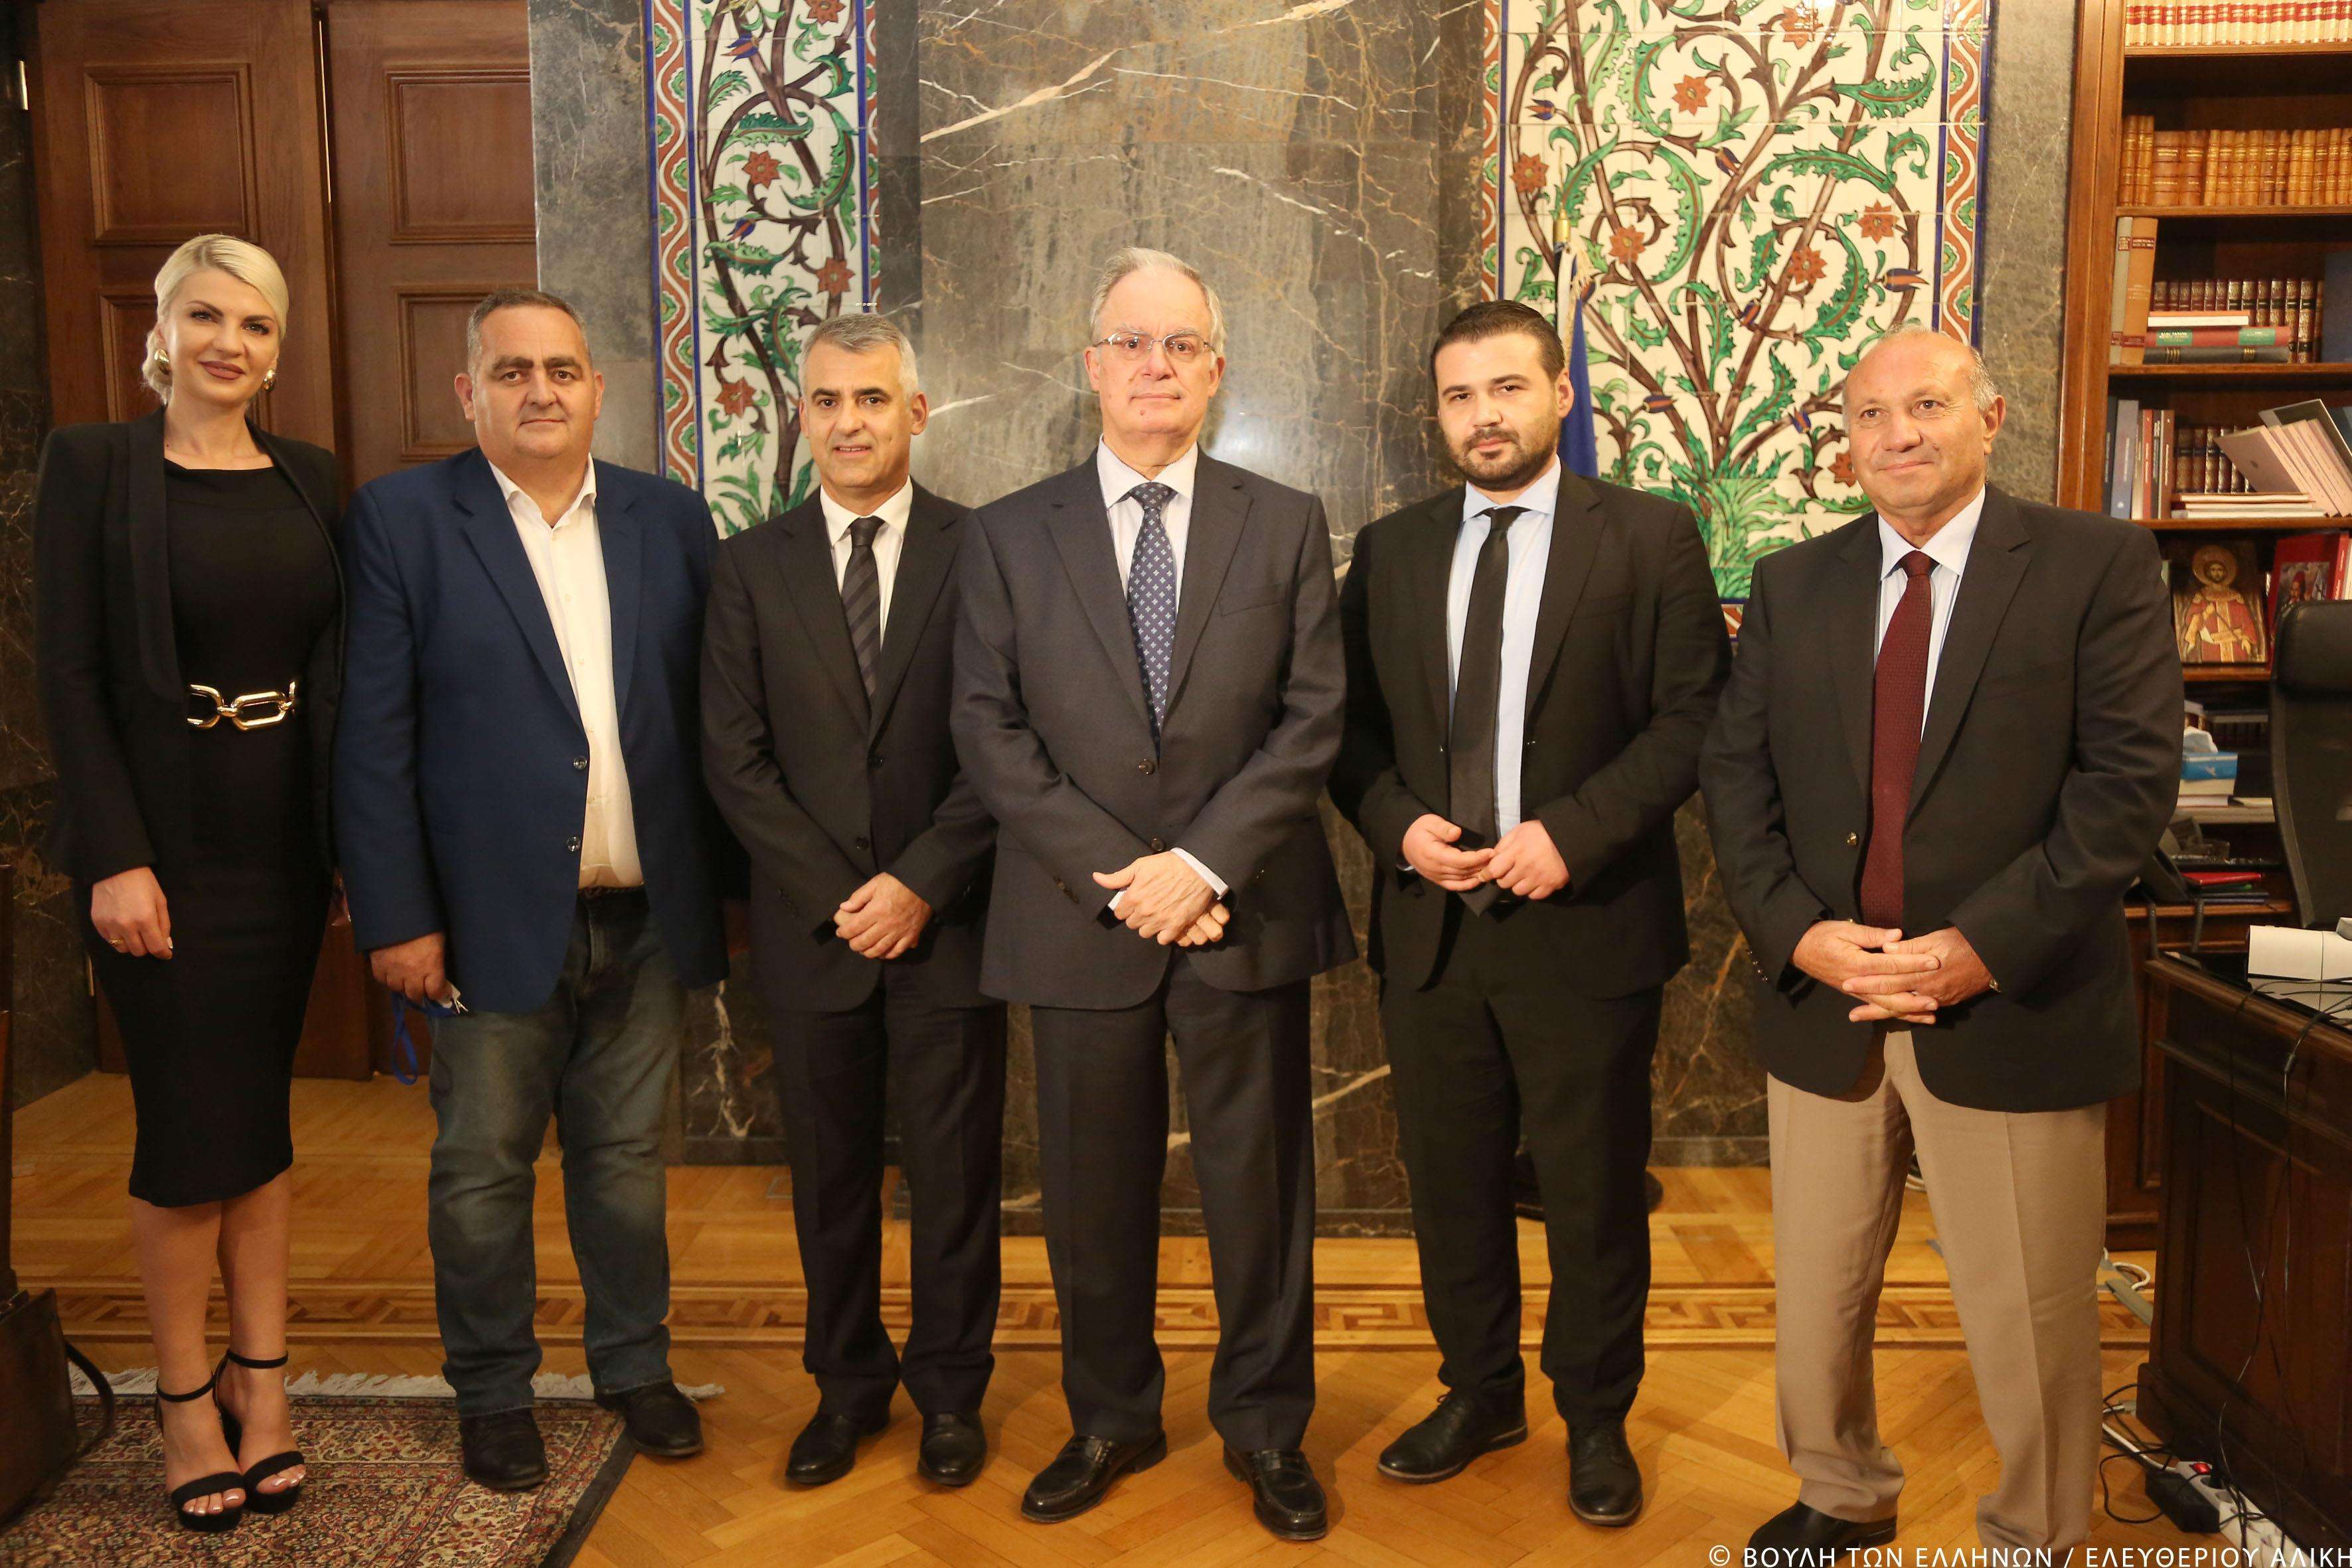  Συνάντηση του Προέδρου της Βουλής με αντιπροσωπεία της Ελληνικής Εθνικής Μειονότητας Αλβανίας  Πηγή: Himara.gr | Ειδήσεις απ' την Βόρειο Ήπειρο